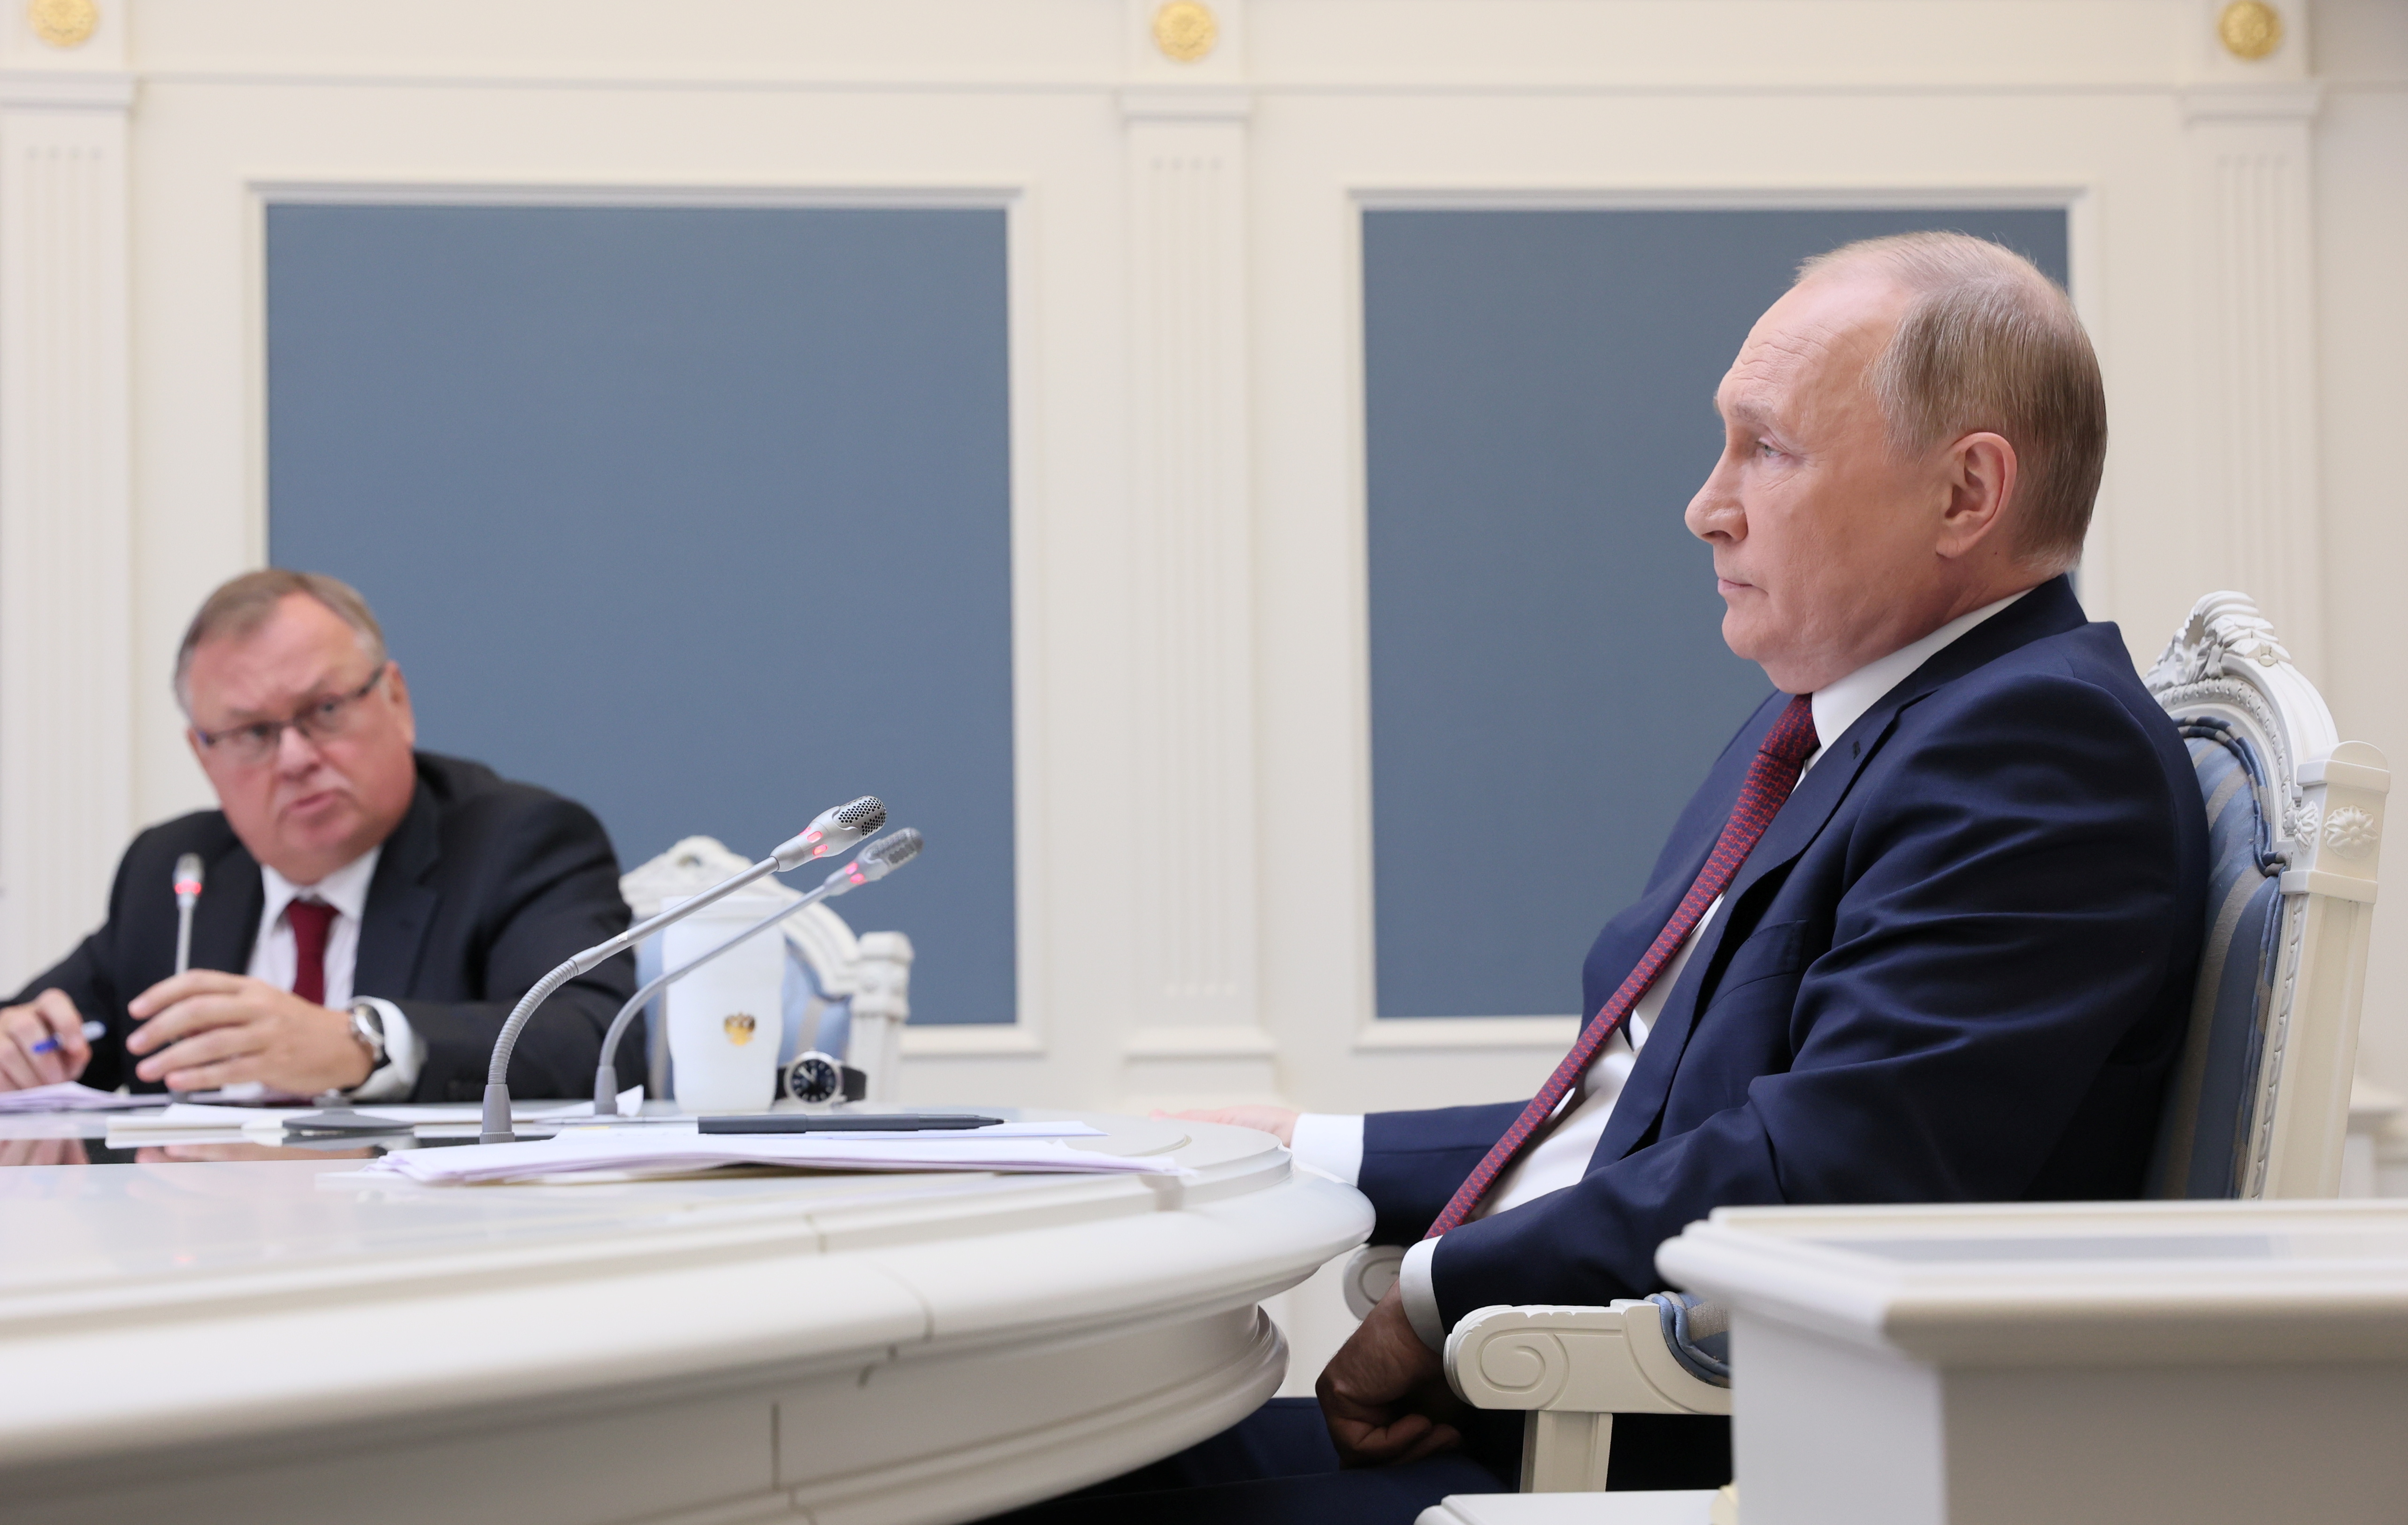 Ο Ρώσος Πρόεδρος Βλαντιμίρ Πούτιν και ο Διευθύνων Σύμβουλος της τράπεζας VTB Andrey Kostin παρευρίσκονται σε μια συνεδρία του επενδυτικού φόρουμ VTB Capital "Russia Calling!" μέσω τηλεδιάσκεψης στη Μόσχα, Ρωσία, 30 Νοεμβρίου 2021. Sputnik/Mikhail Metzel/Pool μέσω REUTERS